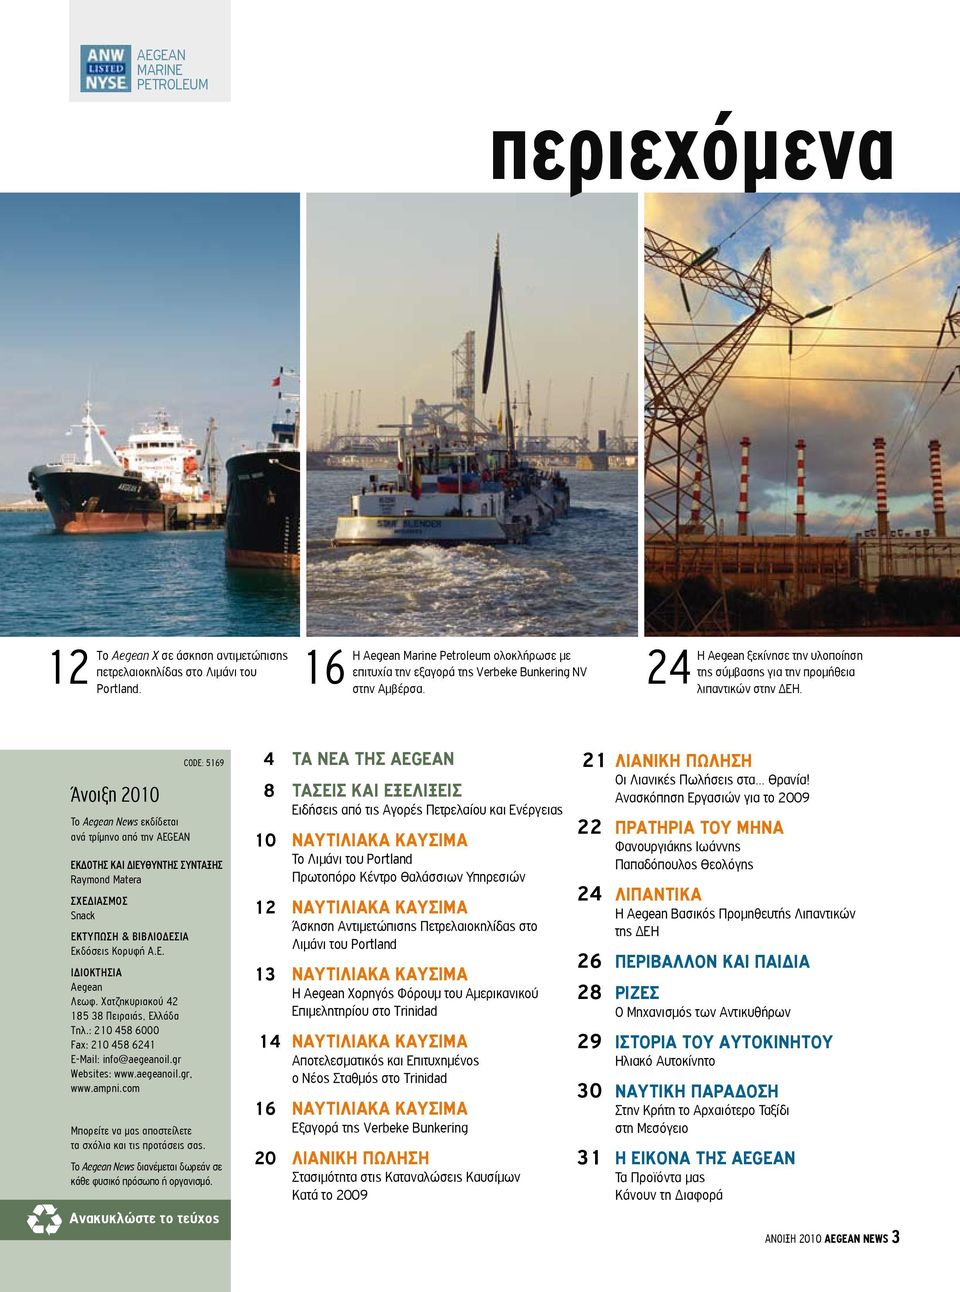 Άνοιξη 2010 Το Aegean News εκδίδεται ανά τρίμηνο από την AEGEAN ΕΚΔΟΤΗΣ ΚΑΙ ΔΙΕΥΘΥΝΤΗΣ ΣΥΝΤΑΞΗΣ Raymond Matera σχεδιασμοσ Snack εκτυπωση & βιβλιοδεσια Εκδόσεις Κορυφή Α.Ε. ιδιοκτησια Aegean Λεωφ.